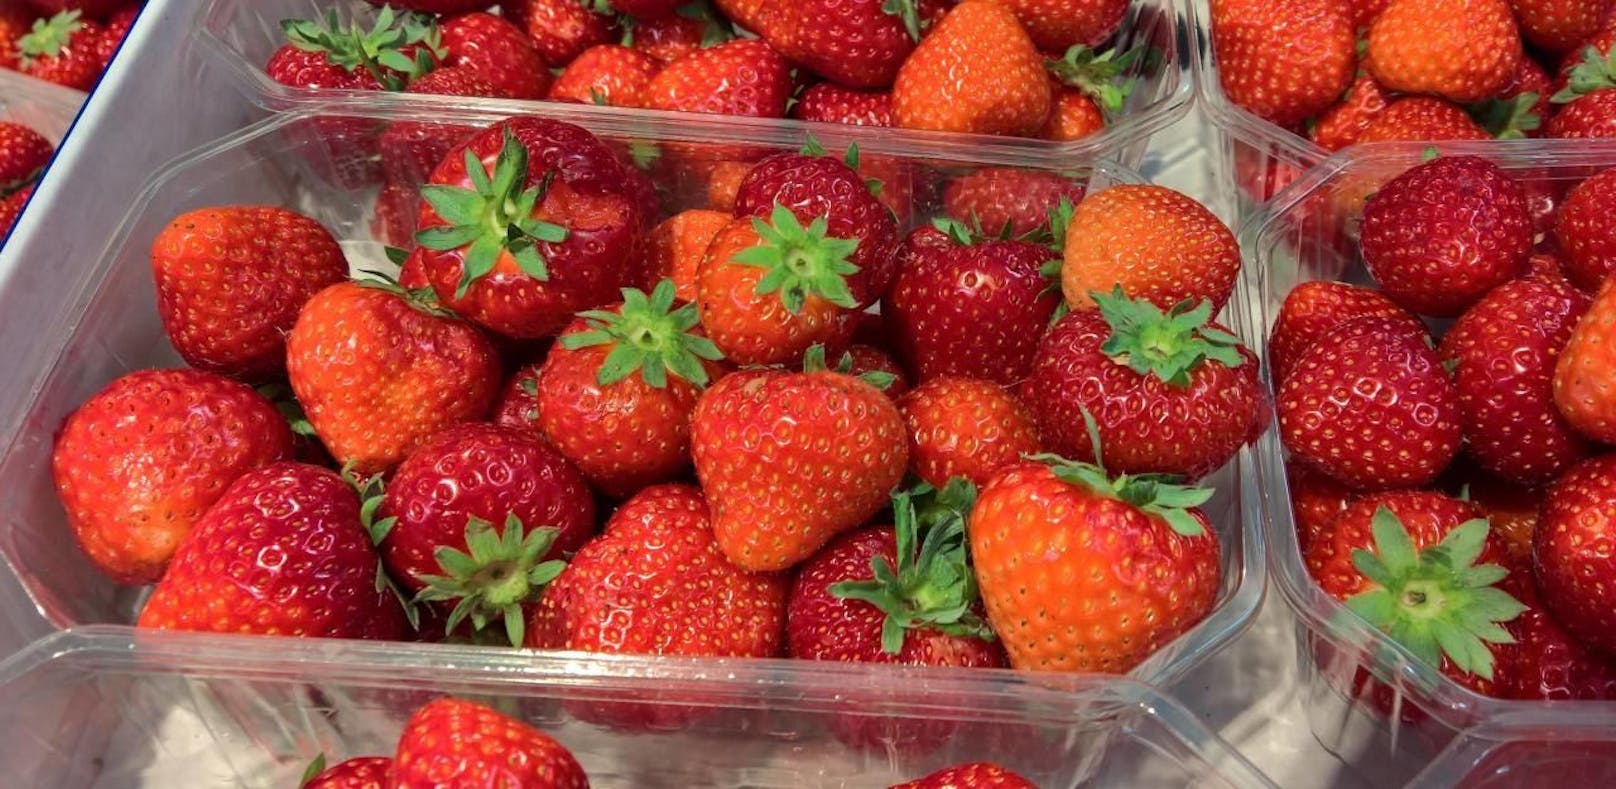 <strong>Erdbeeren:</strong> Der Wasserstrahl hinterlässt Druckstellen an den Früchten, die den Reifeprozess beschleunigen. Zum Waschen die Erdbeeren am besten in eine Schüssel Wasser geben und vorsichtig umrühren.